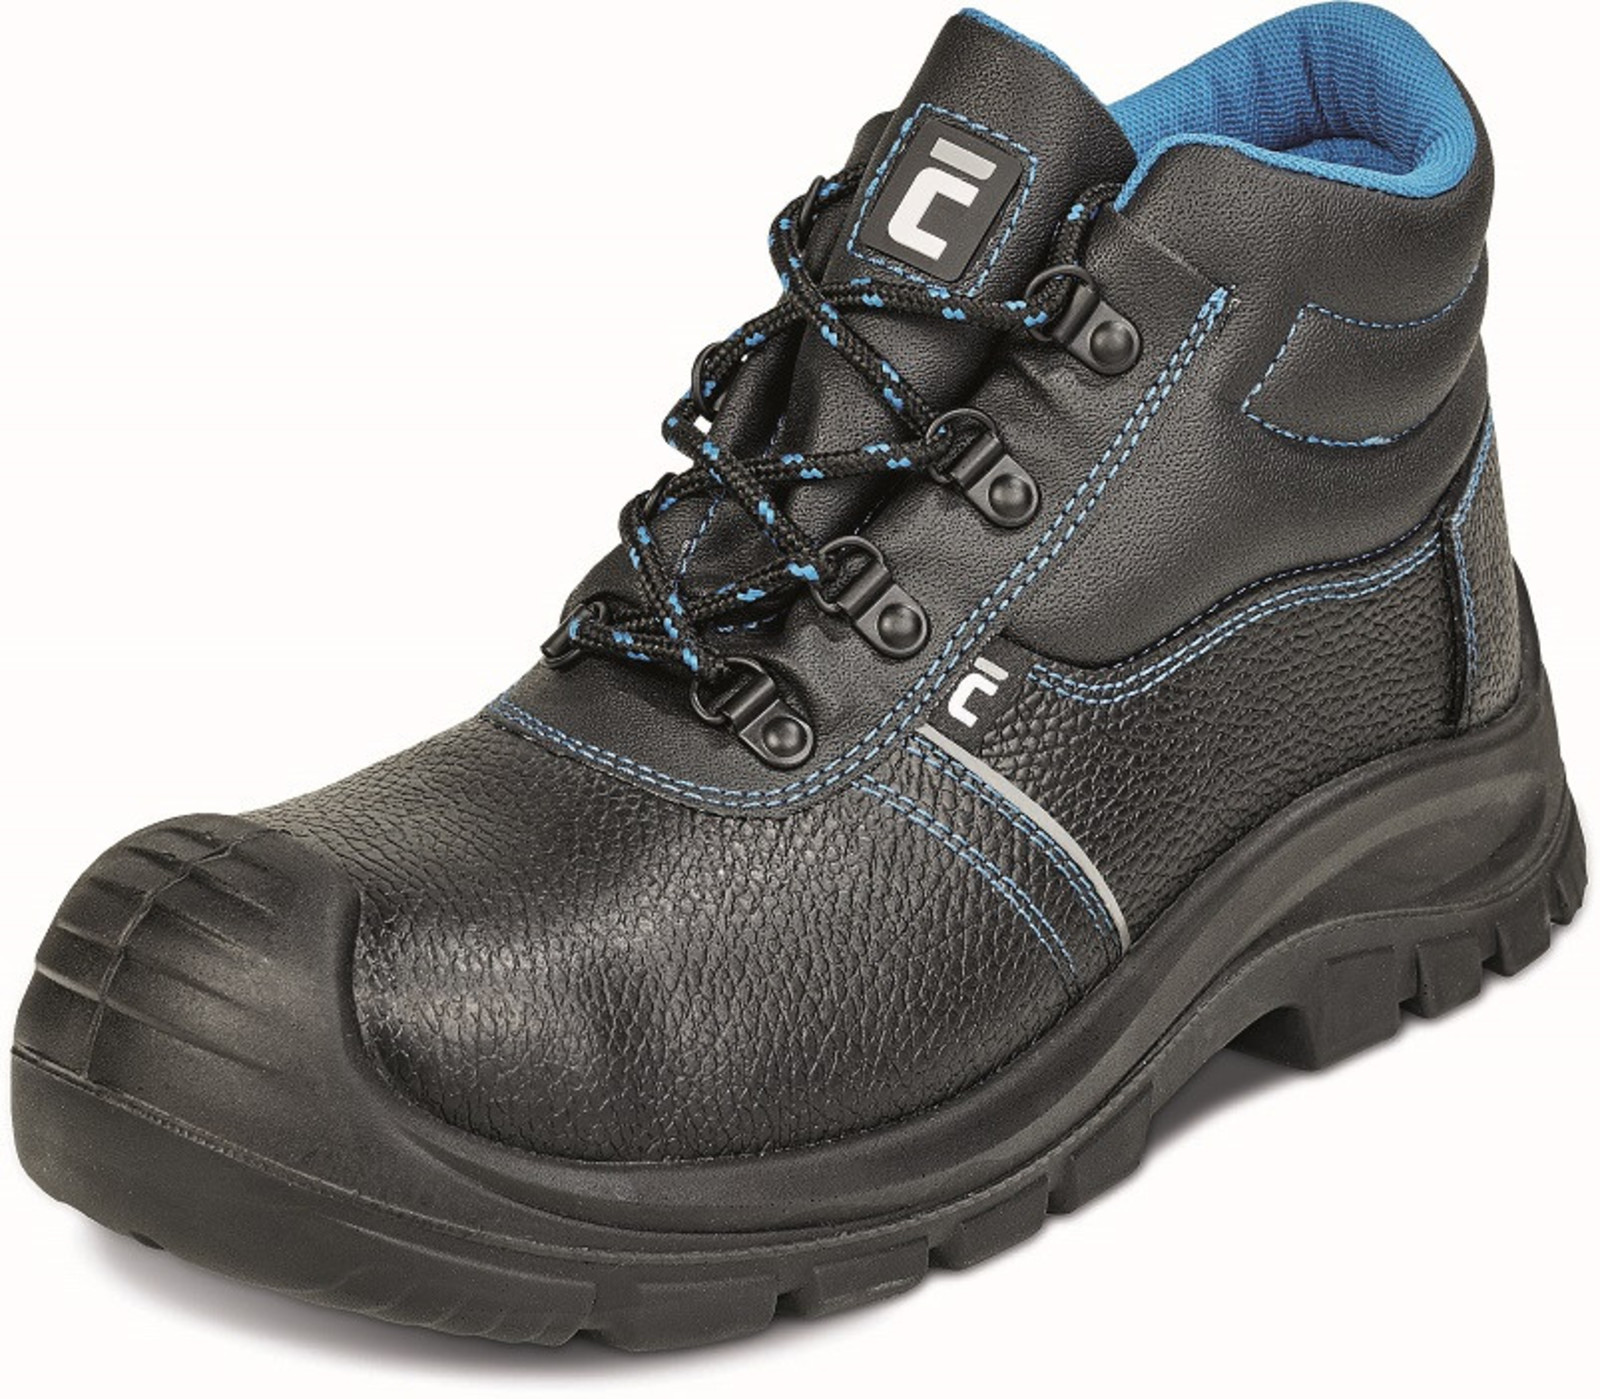 Bezpečnostná obuv Raven XT S1 - veľkosť: 44, farba: čierna